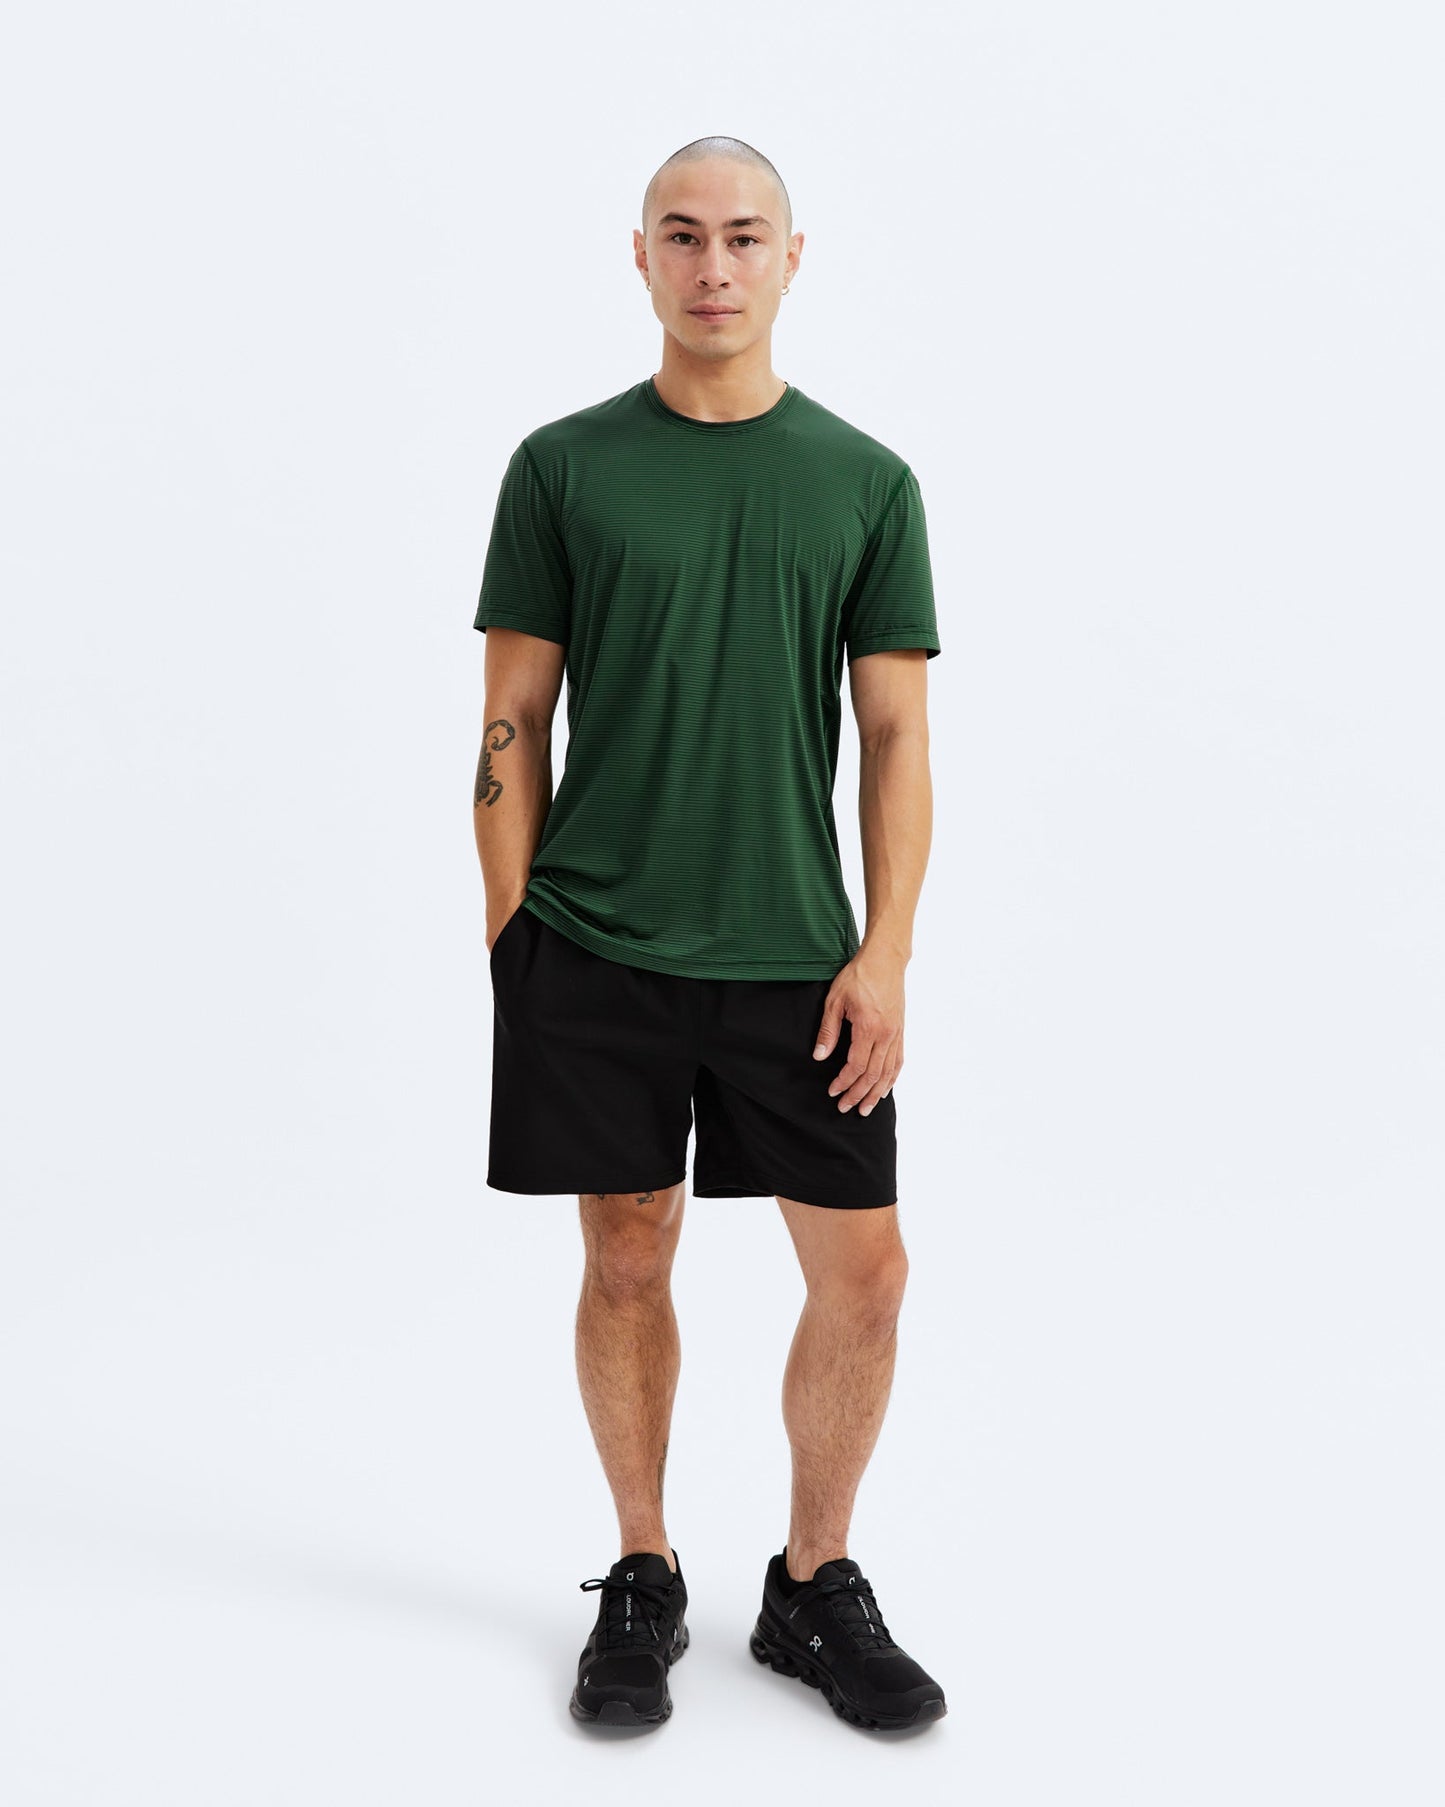 Nylon Jersey Running T-shirt